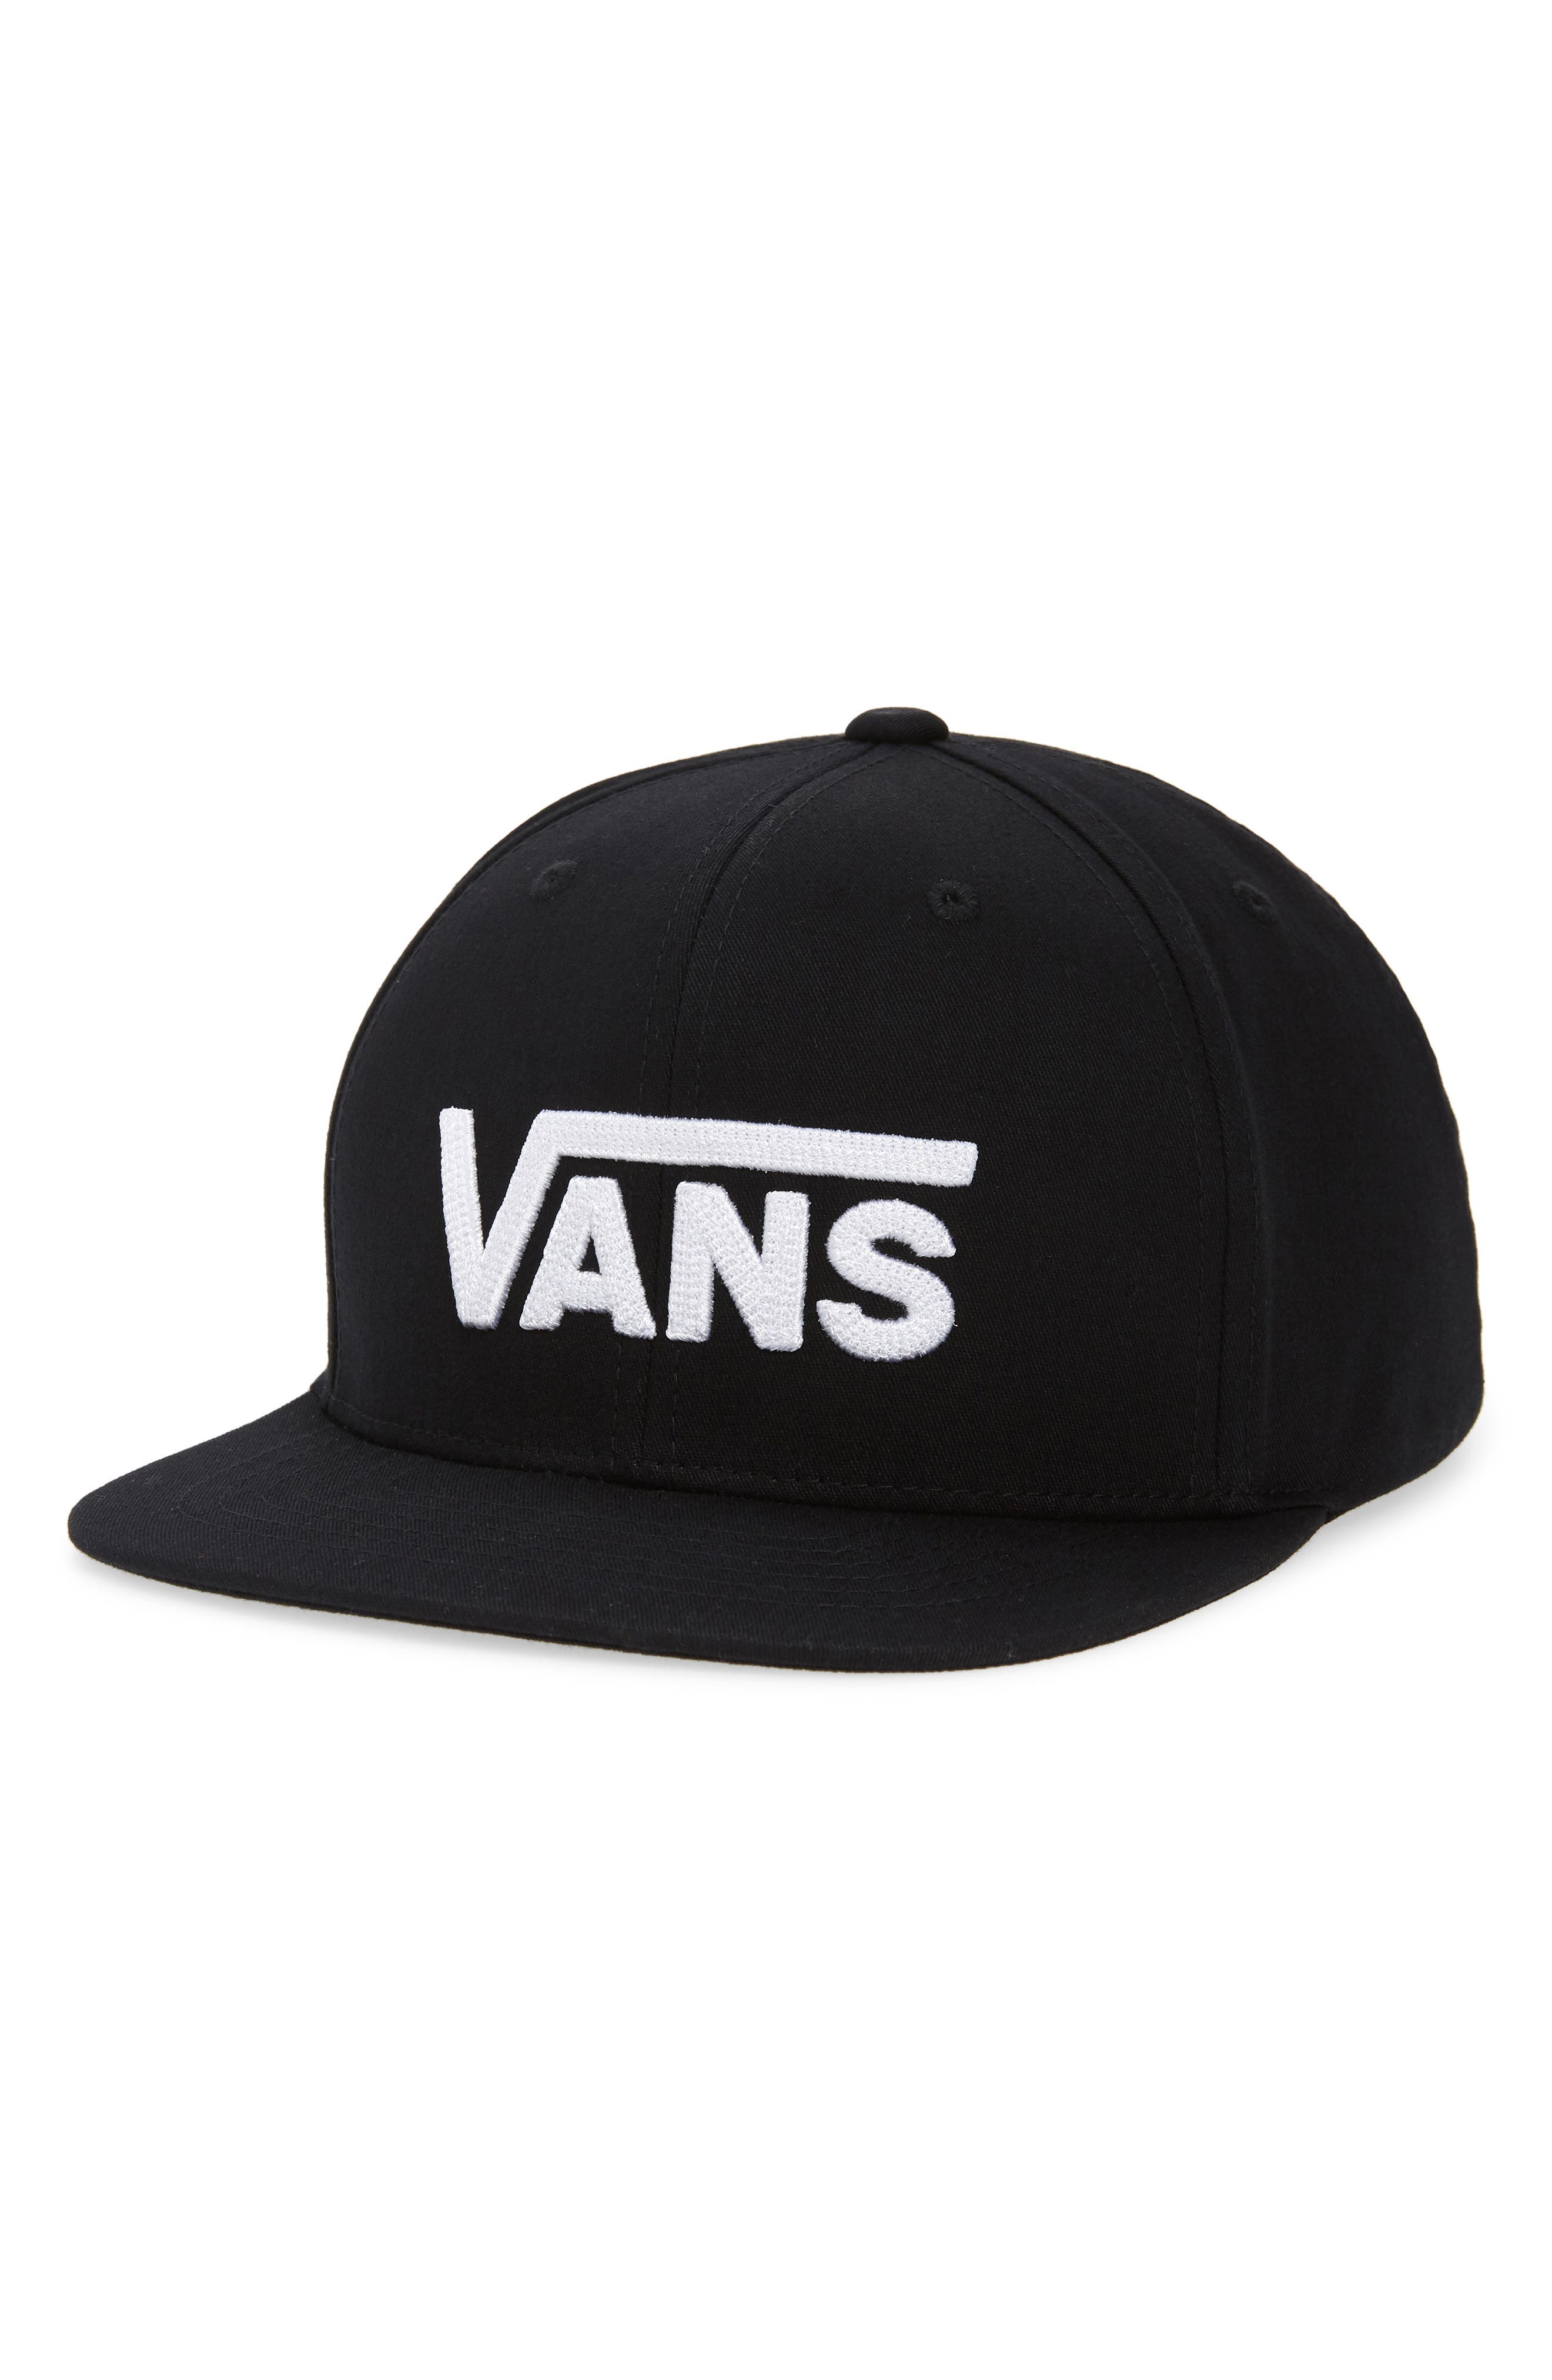 vans hats for girls